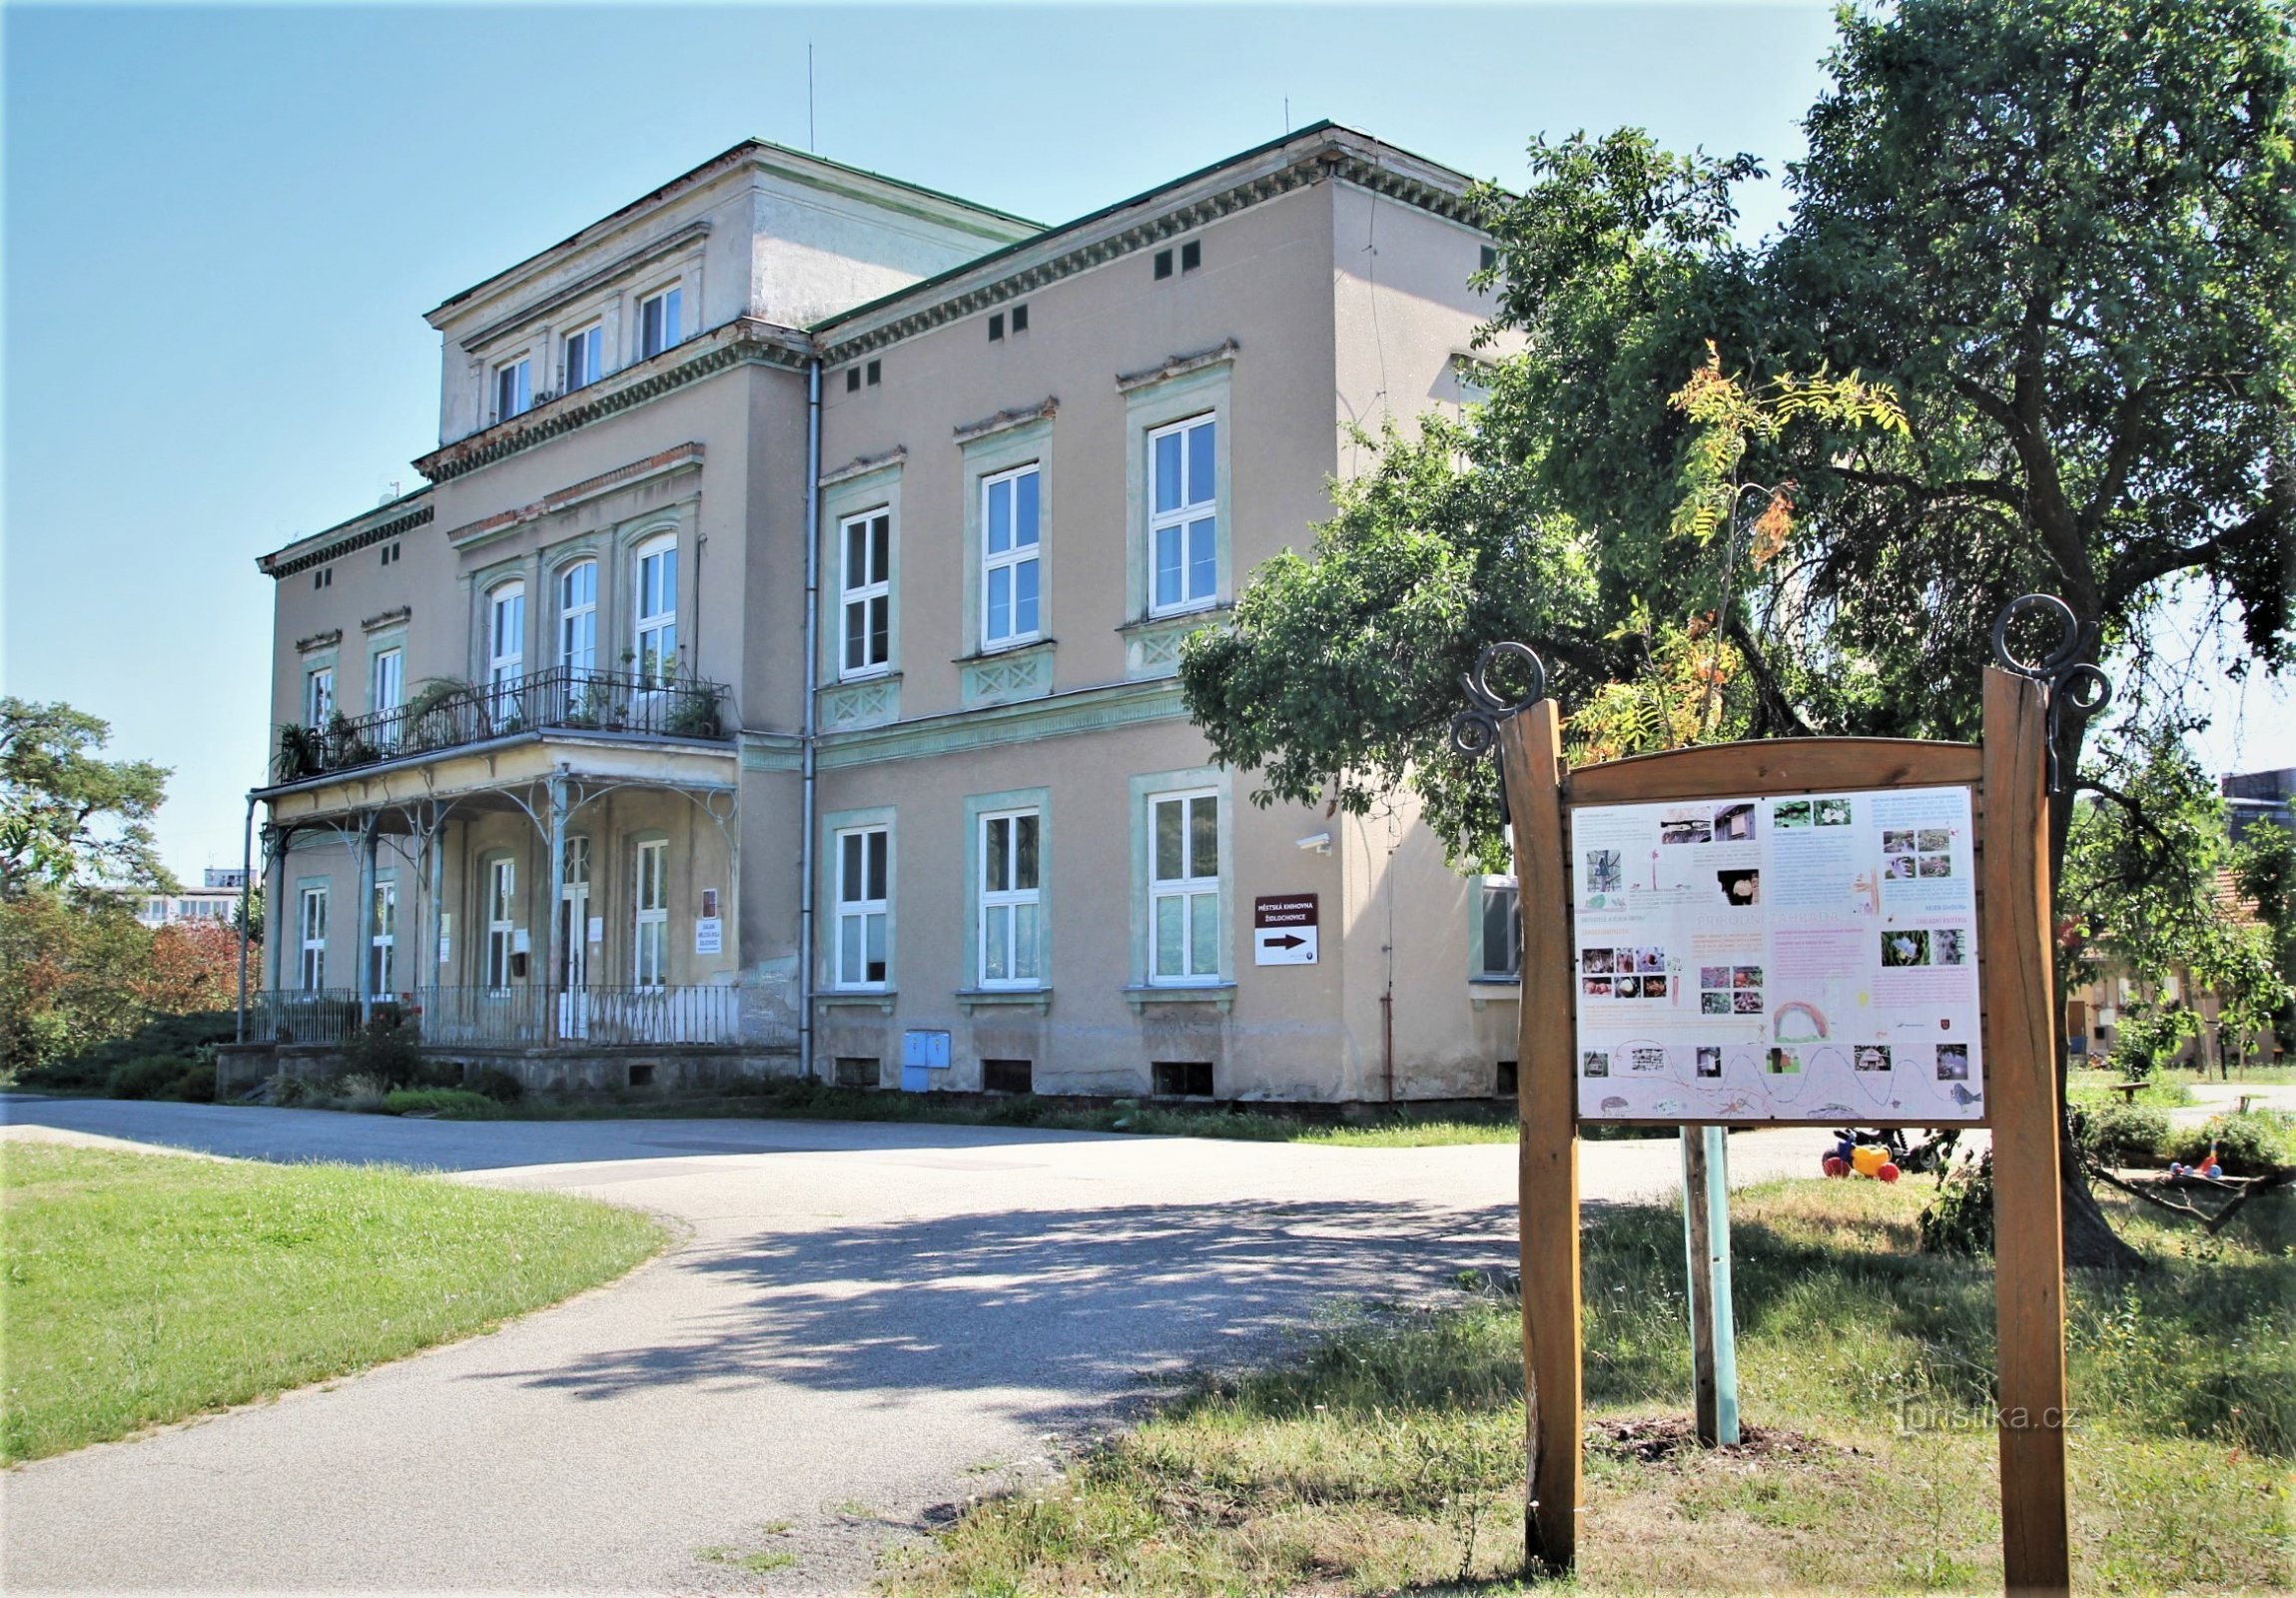 Židlochovice - Área de la villa de Robert